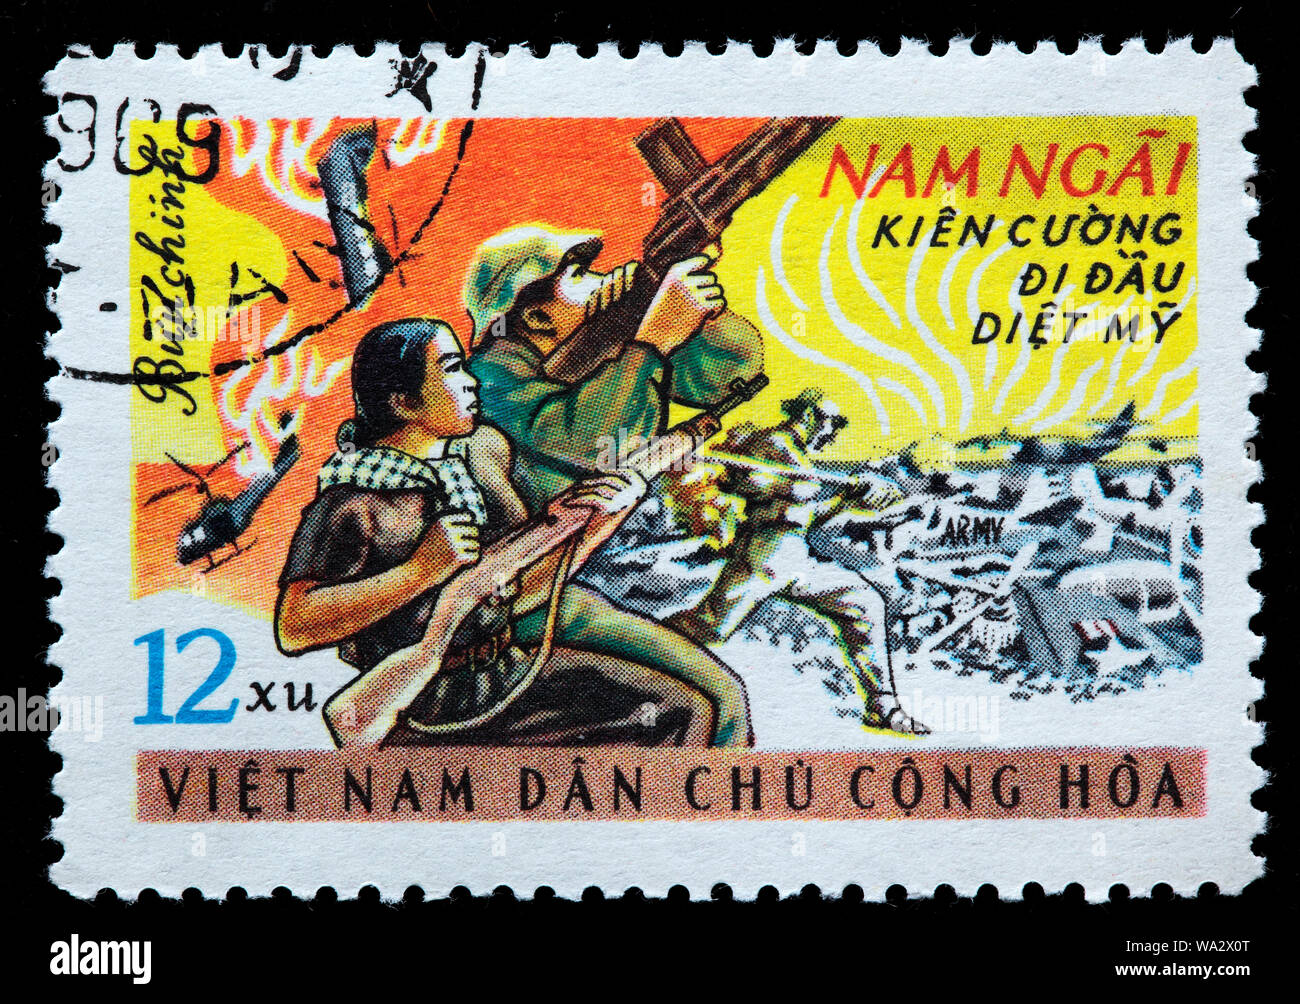 Soldaten schießen auf US-Flugzeuge, Vietnamkrieg, Briefmarke, Vietnam, 1969 Stockfoto